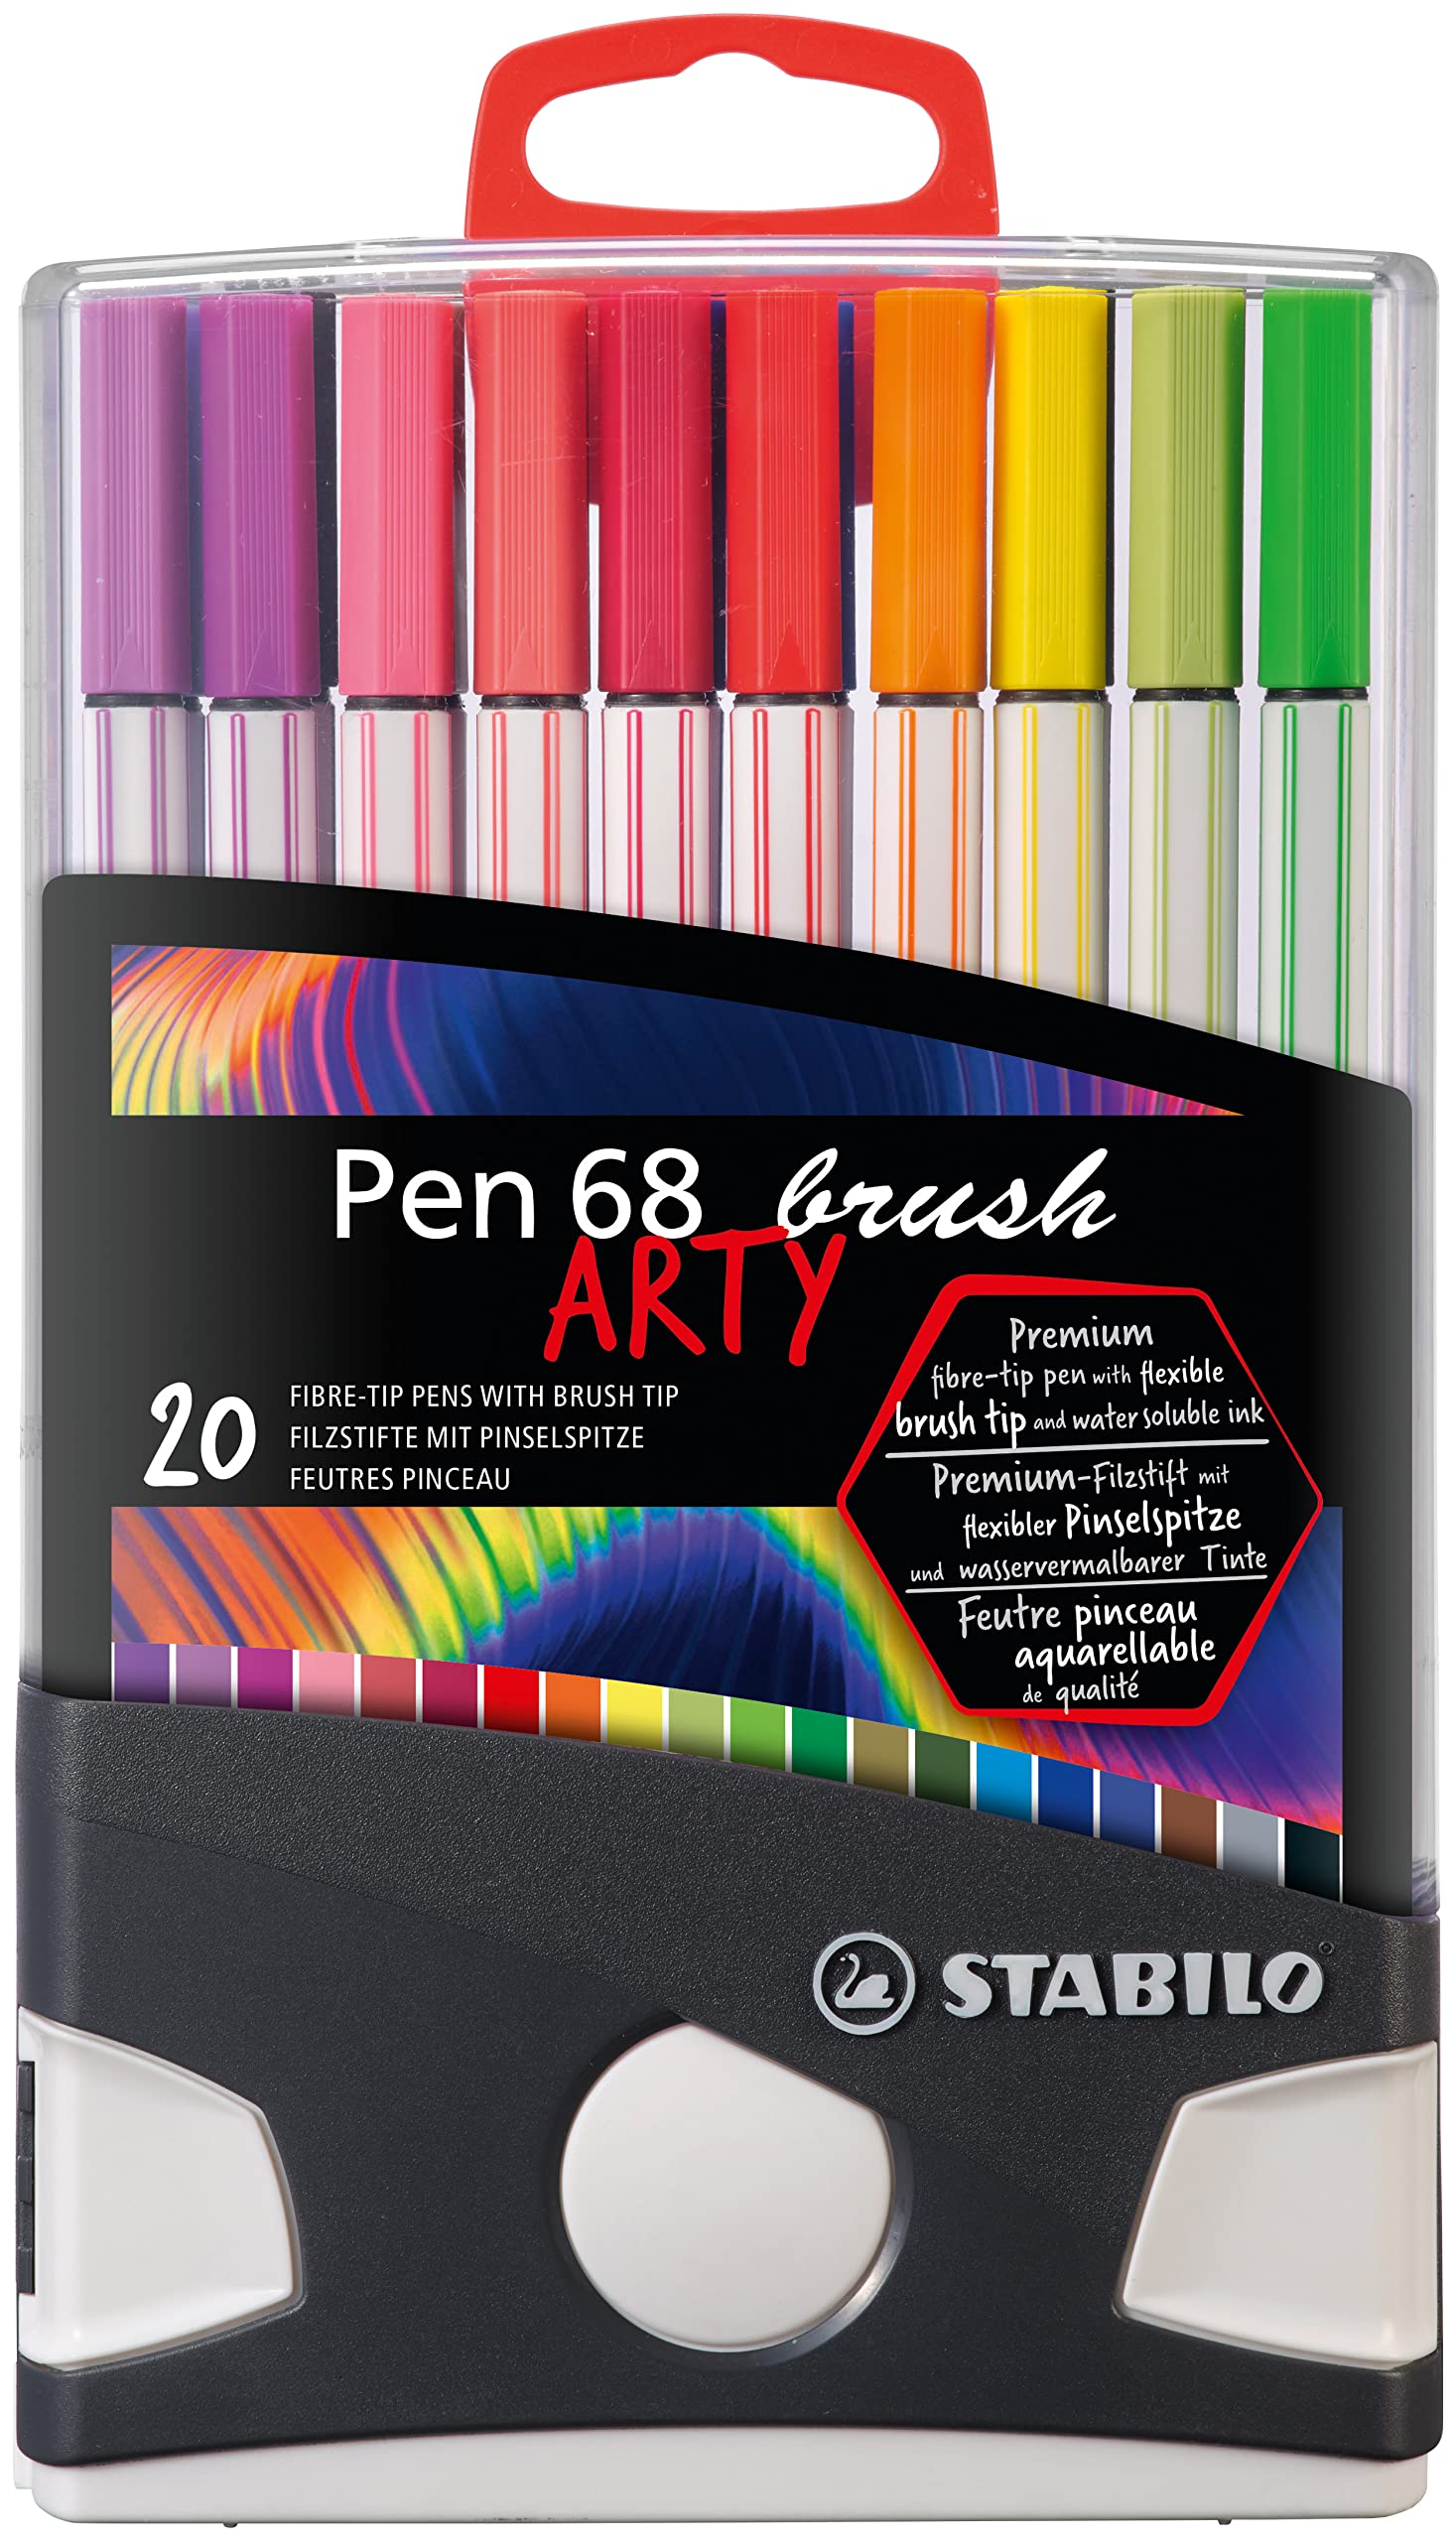 Astuccio 20 Stabilo Pen 68 brush arty Line color parade